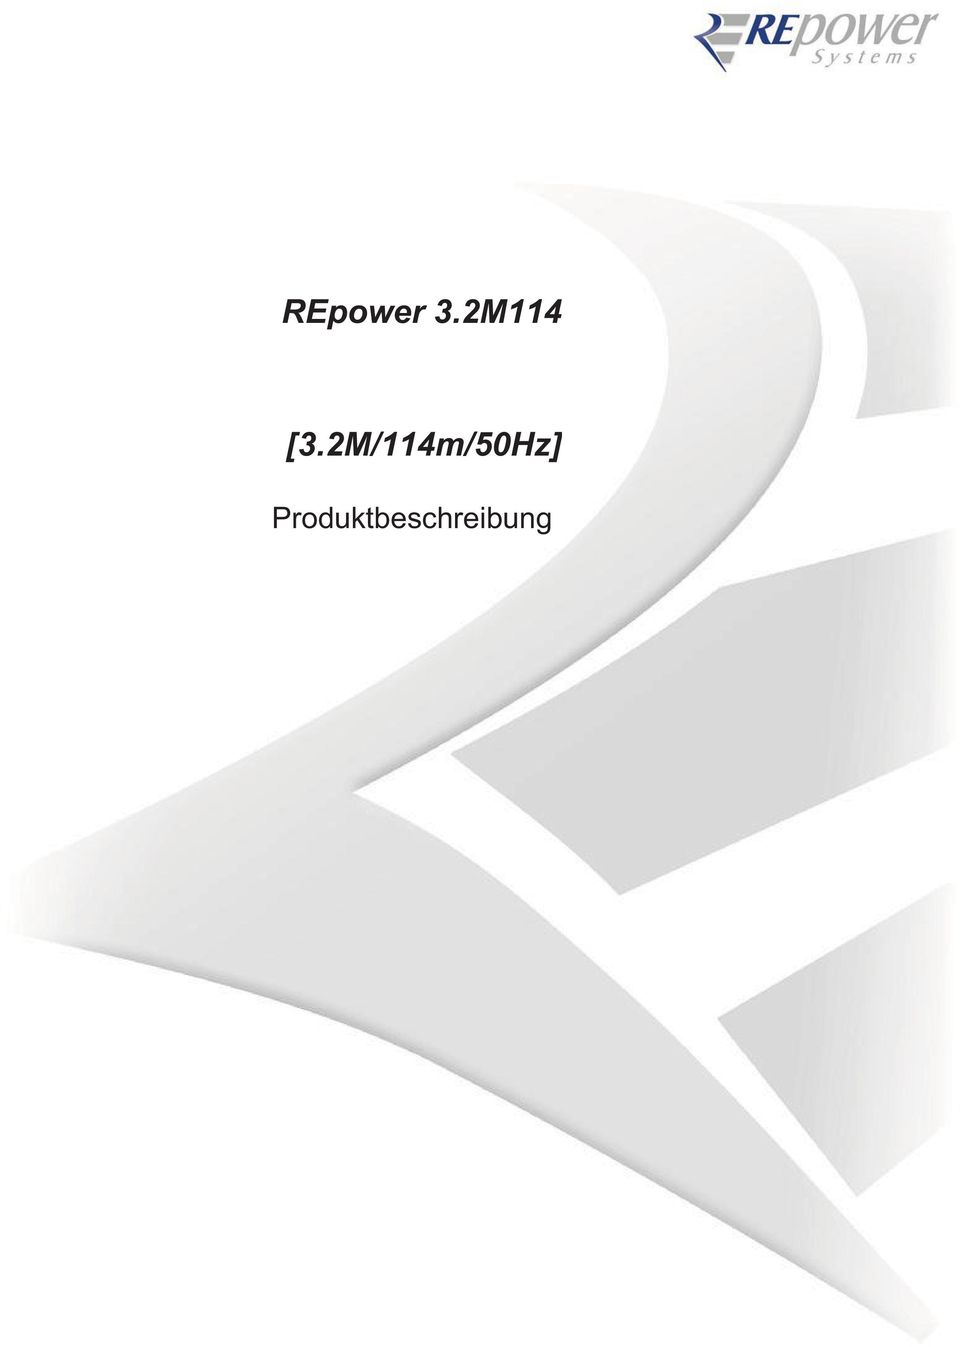 2M/114m/50Hz] Schutzvermerk DIN ISO 16016: Die Reproduktion, der Vertrieb und die Verwendung dieses Dokuments sowie die Kommunikation seines Inhalts an Dritte ohne ausdrückliche schriftliche